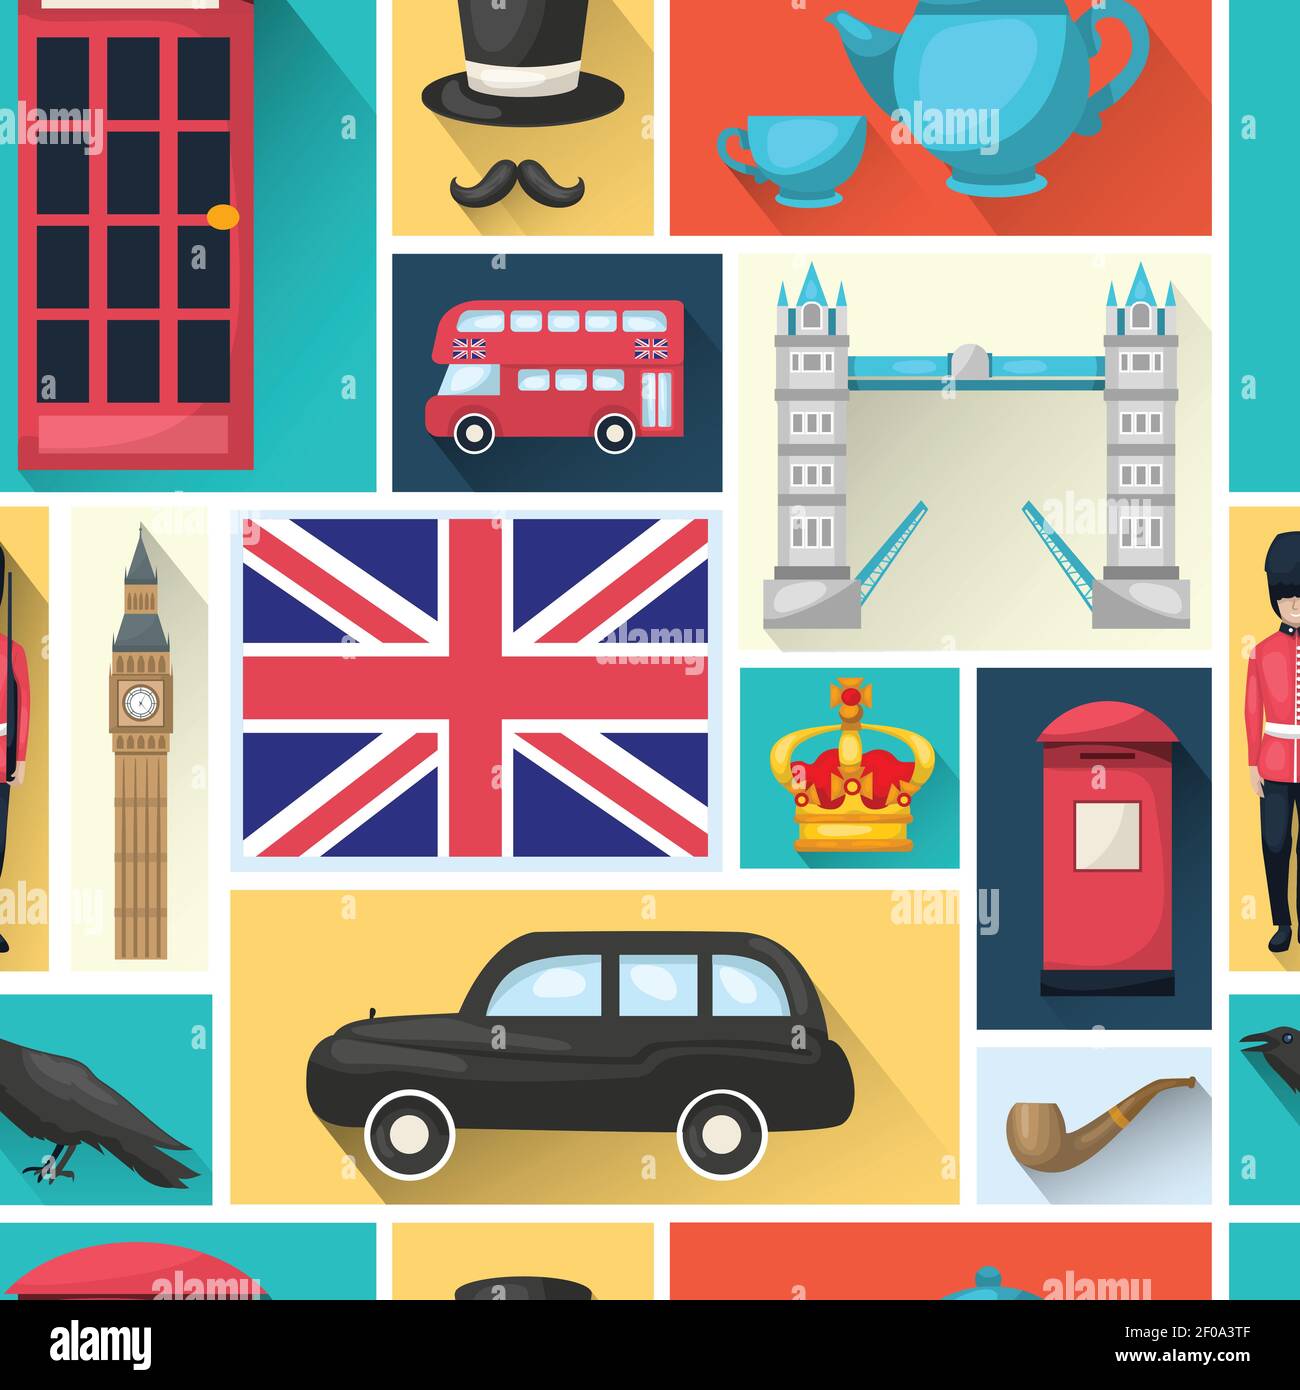 Motif d'arrière-plan transparent de Londres avec icône en forme de carré ombré vues de l'illustration city vector Illustration de Vecteur